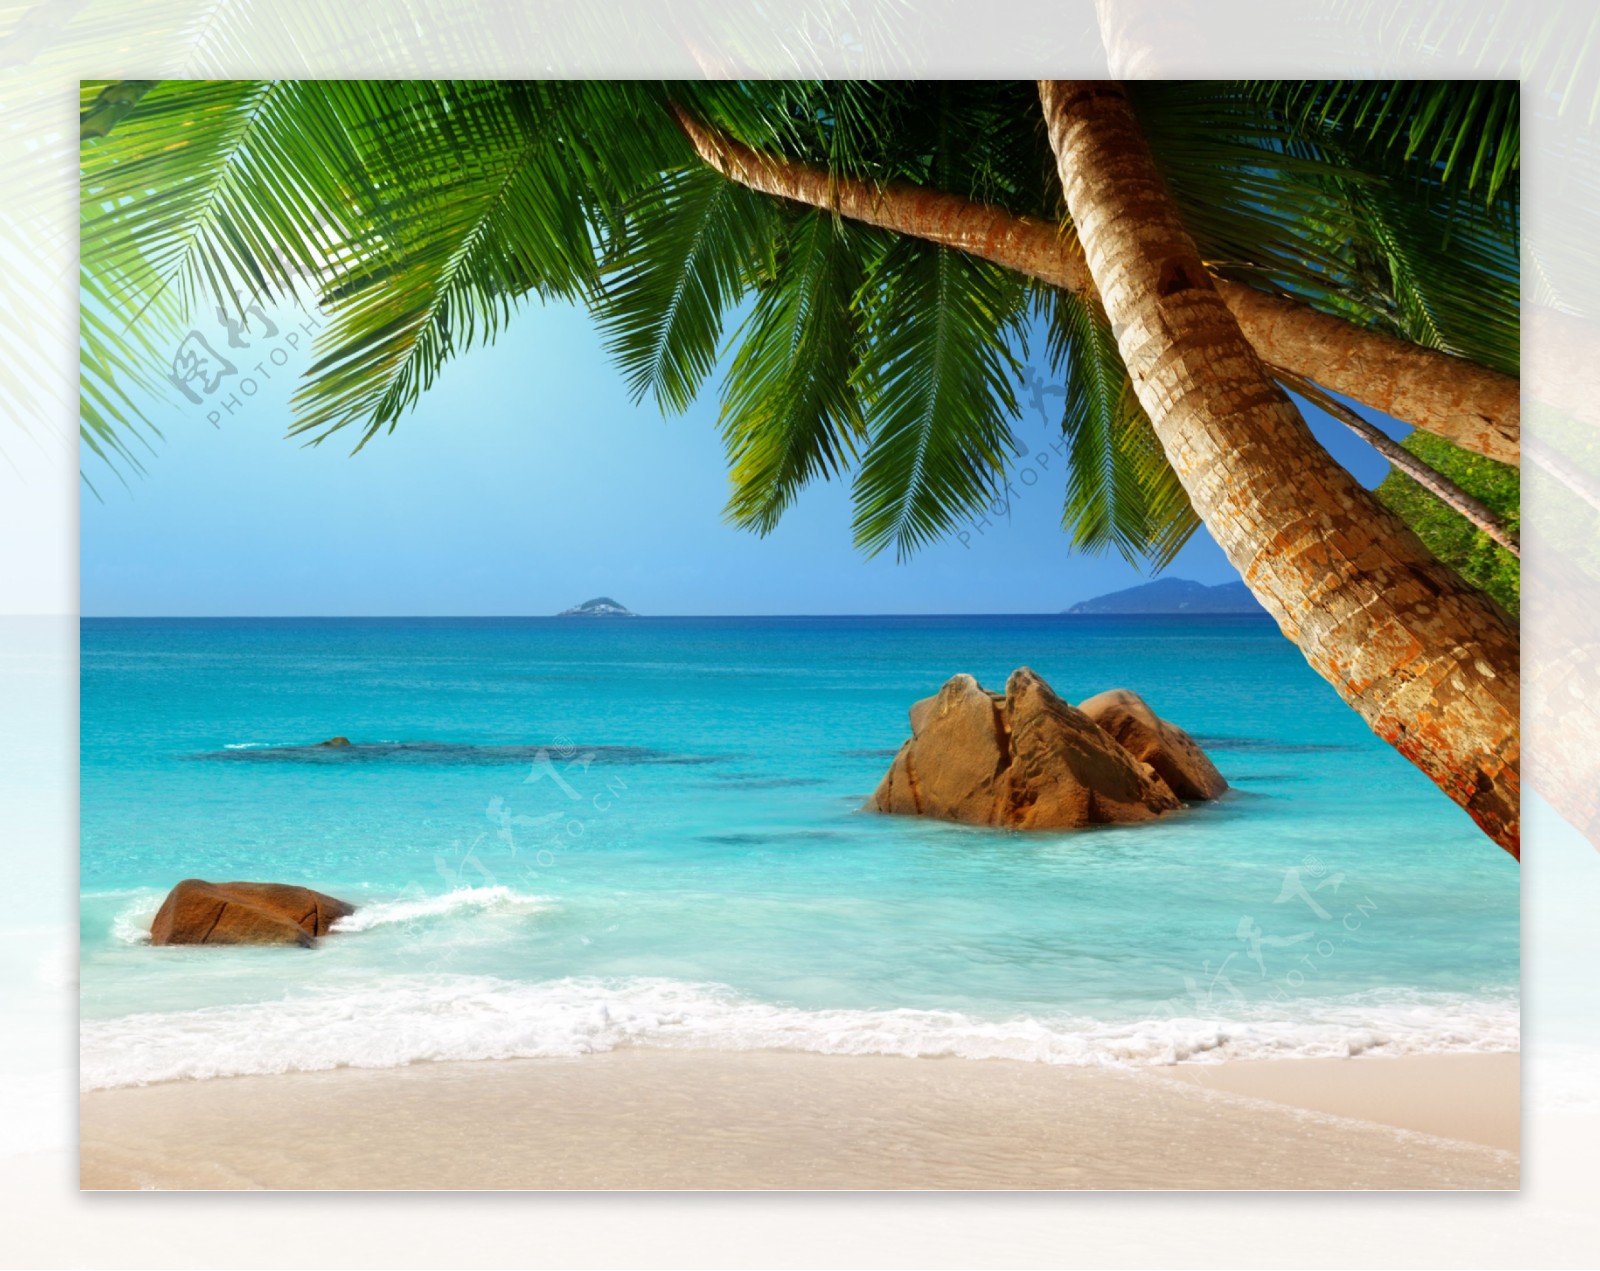 美丽海滩风景与椰树图片